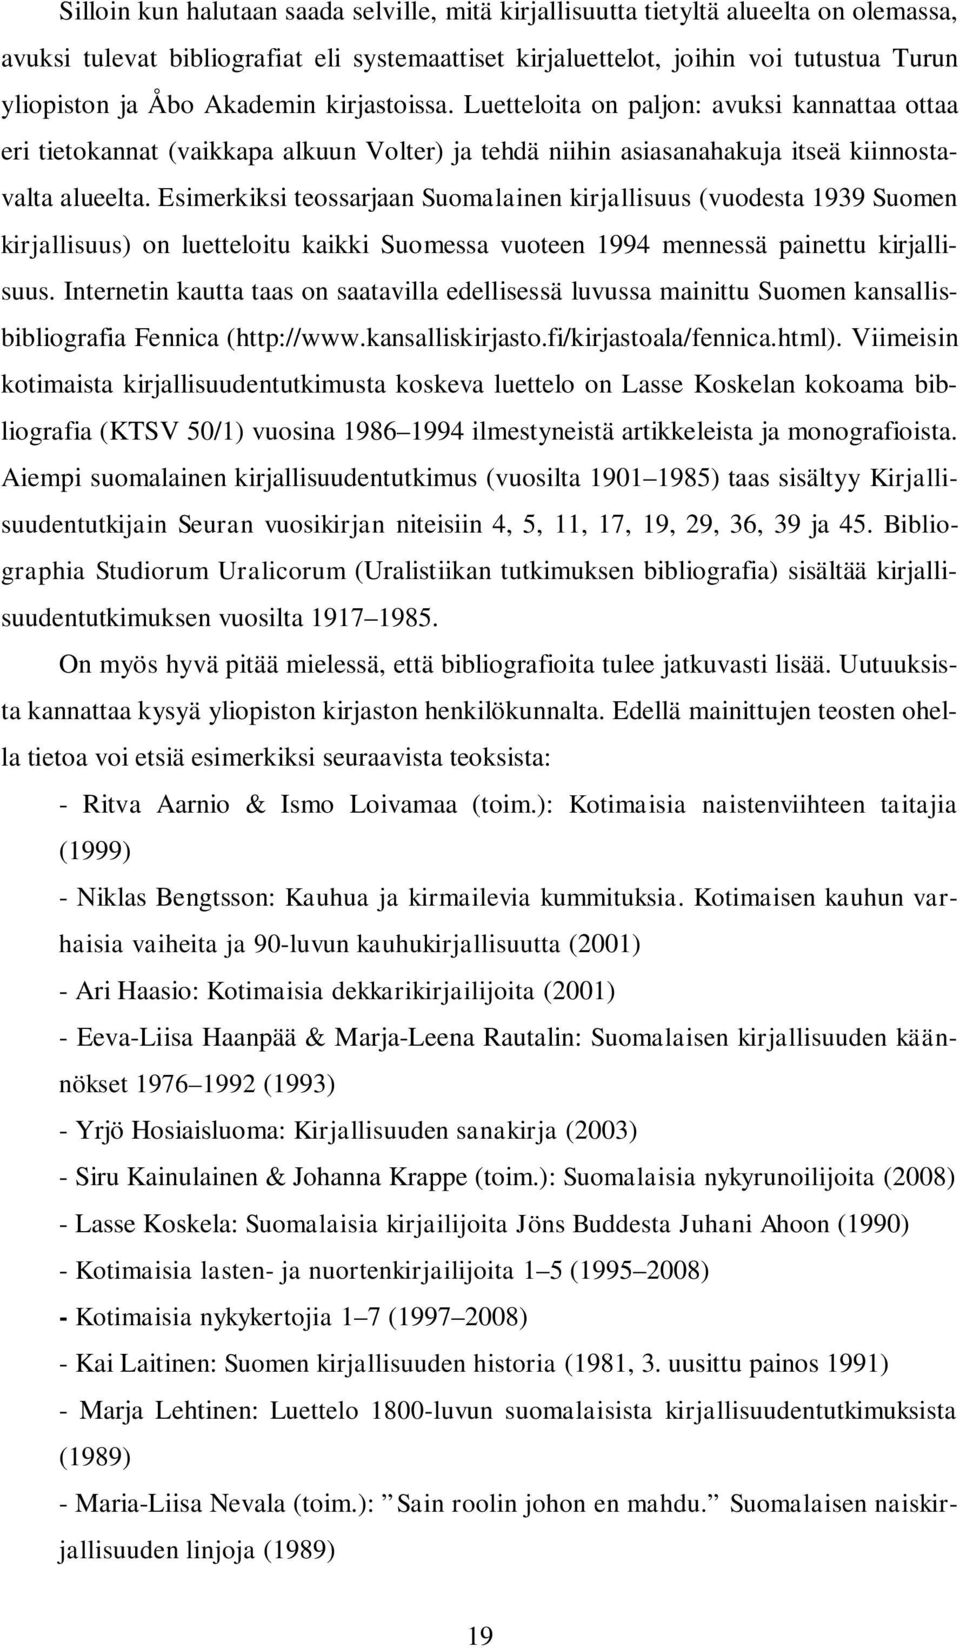 Esimerkiksi teossarjaan Suomalainen kirjallisuus (vuodesta 1939 Suomen kirjallisuus) on luetteloitu kaikki Suomessa vuoteen 1994 mennessä painettu kirjallisuus.